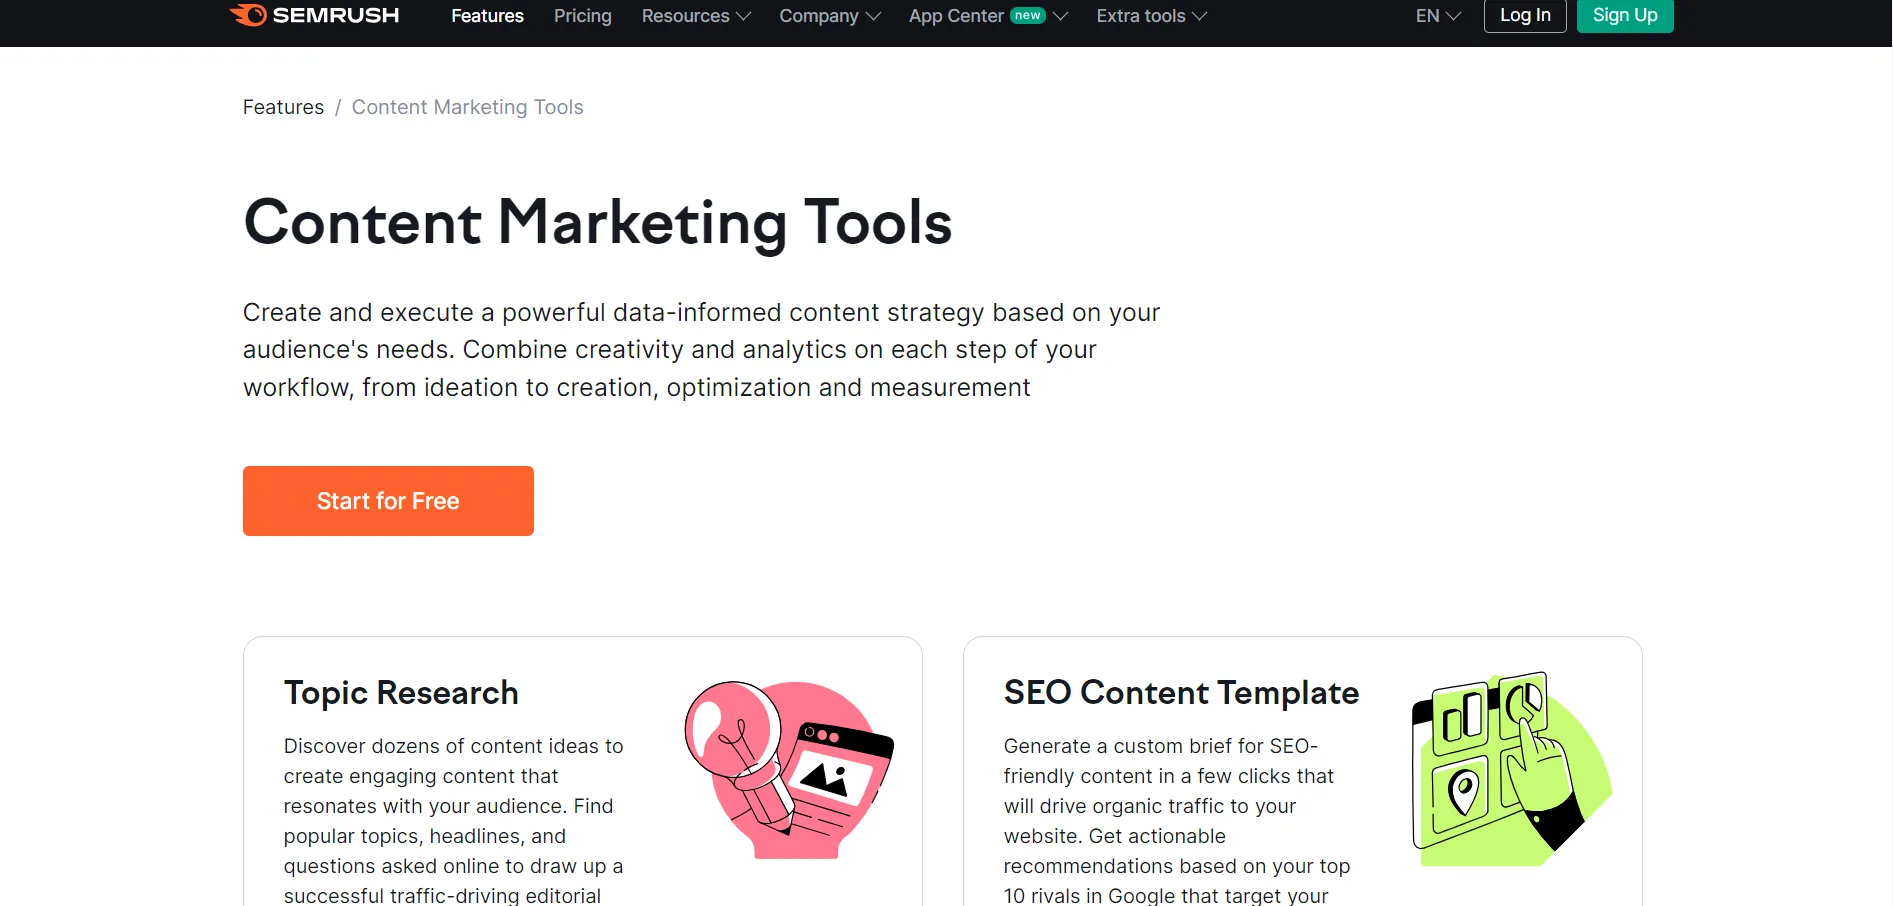 Semrush Content Marketing Tools